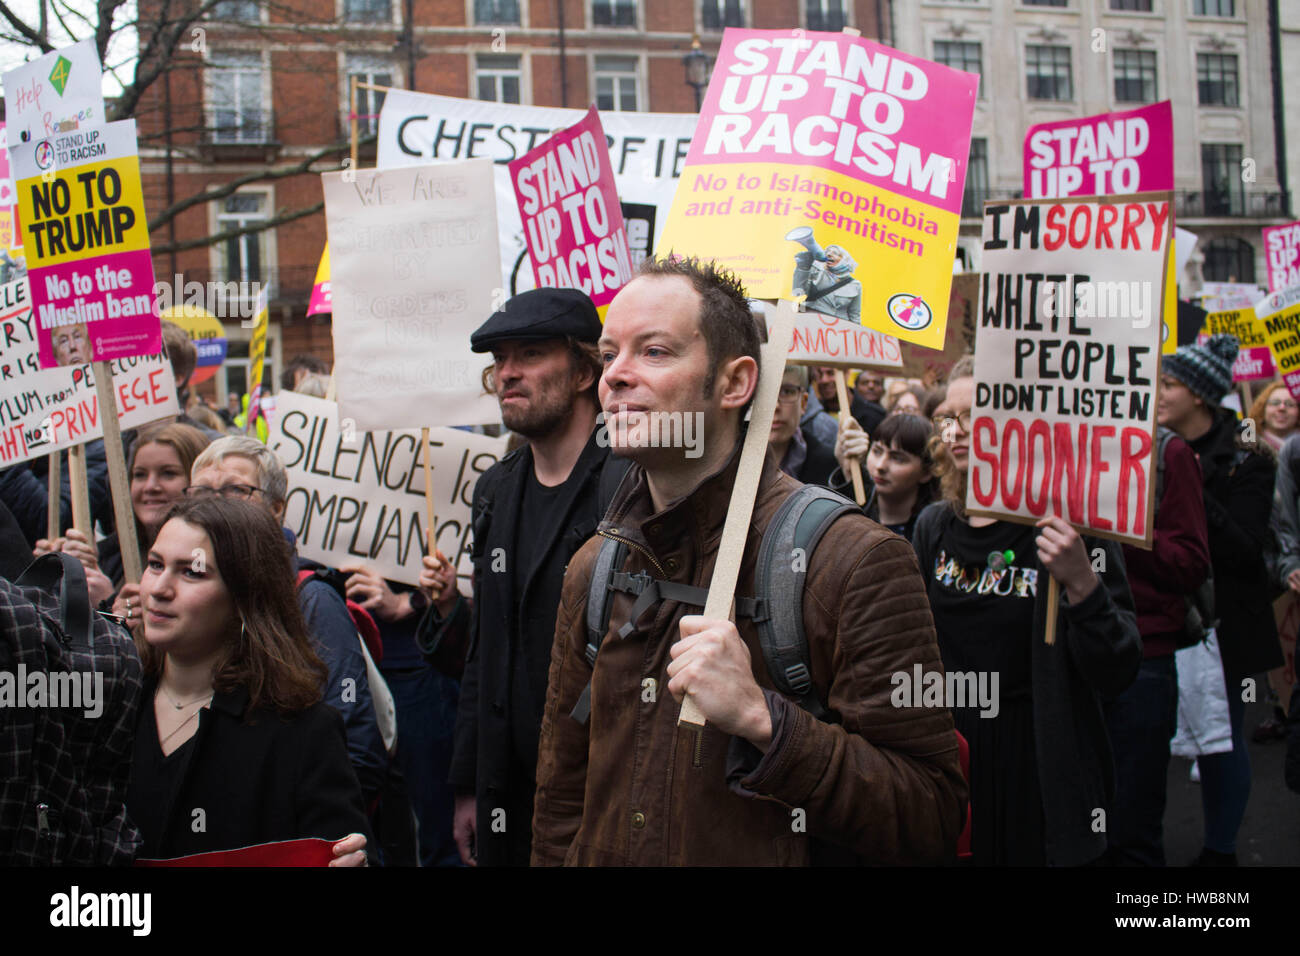 Londra, Regno Unito. Il 18 marzo, 2017. Stand Up al razzismo nel rally di Londra, Regno Unito. Protesta contro Trump, Brexit, il razzismo e l'islamofobia ect. Credito: Matteo Appleyard/Alamy Live News Foto Stock